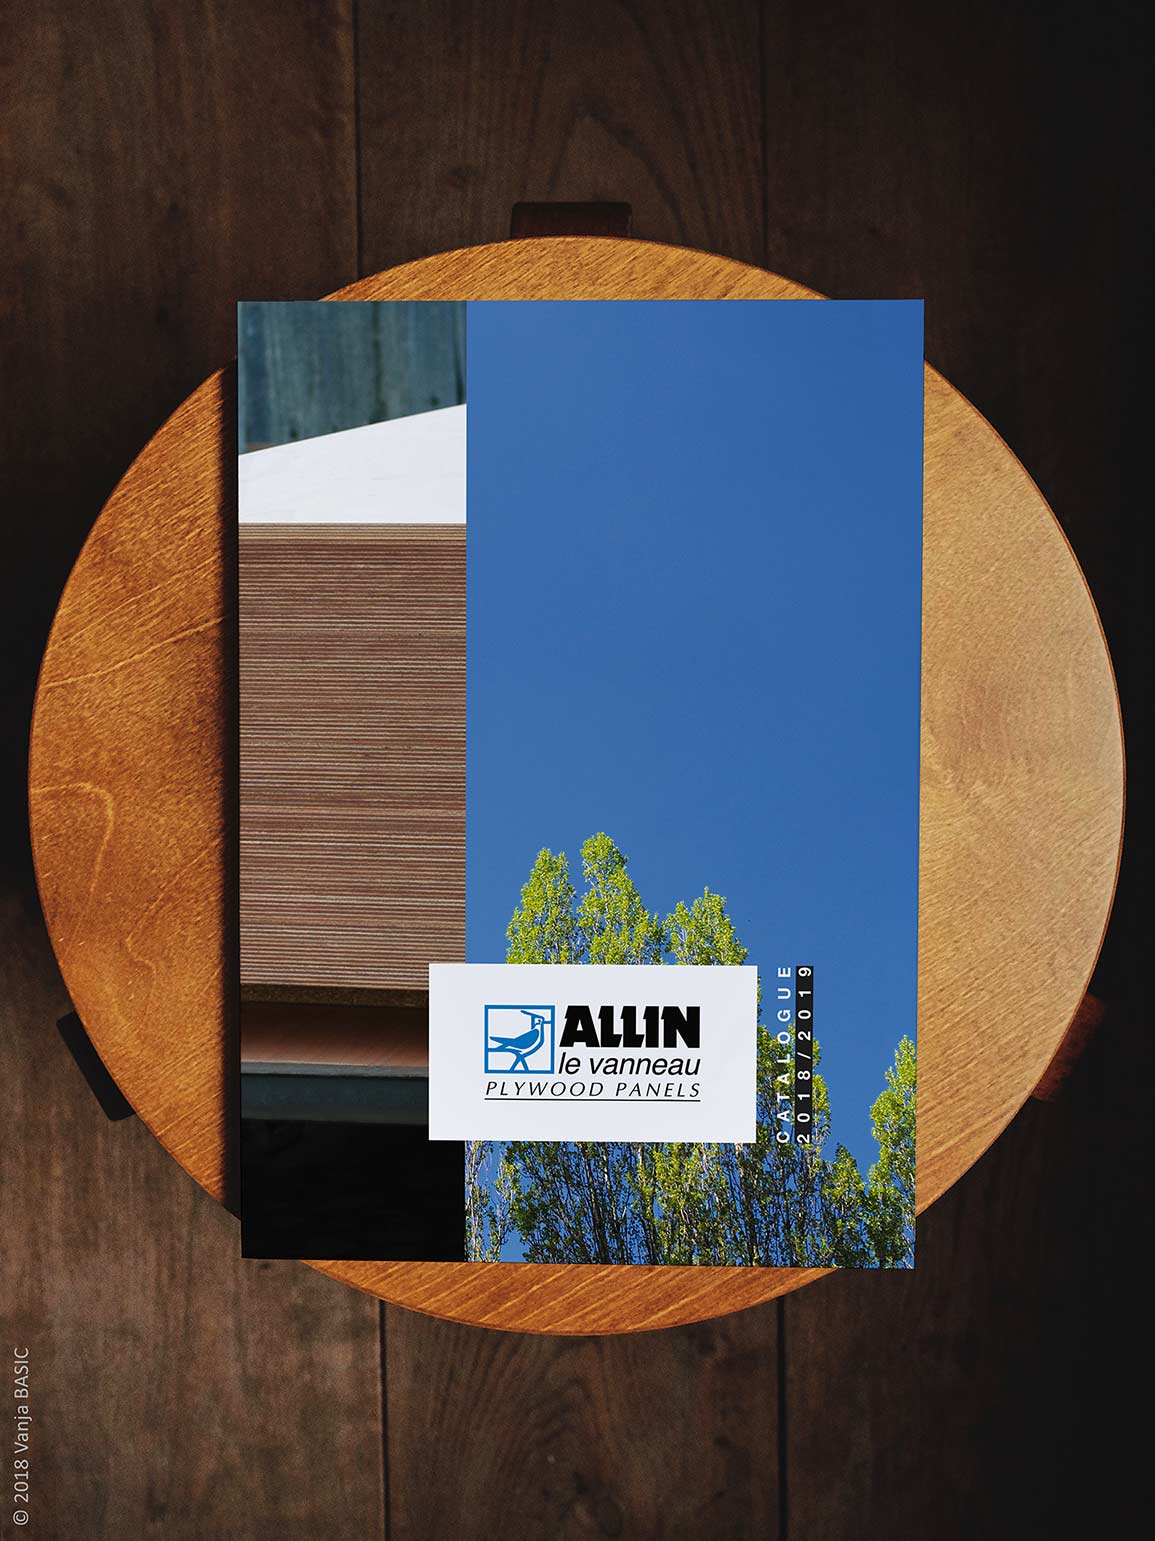 Catalogue pour Allin, fabricant de panneaux contreplaqués en okoumé et peuplier